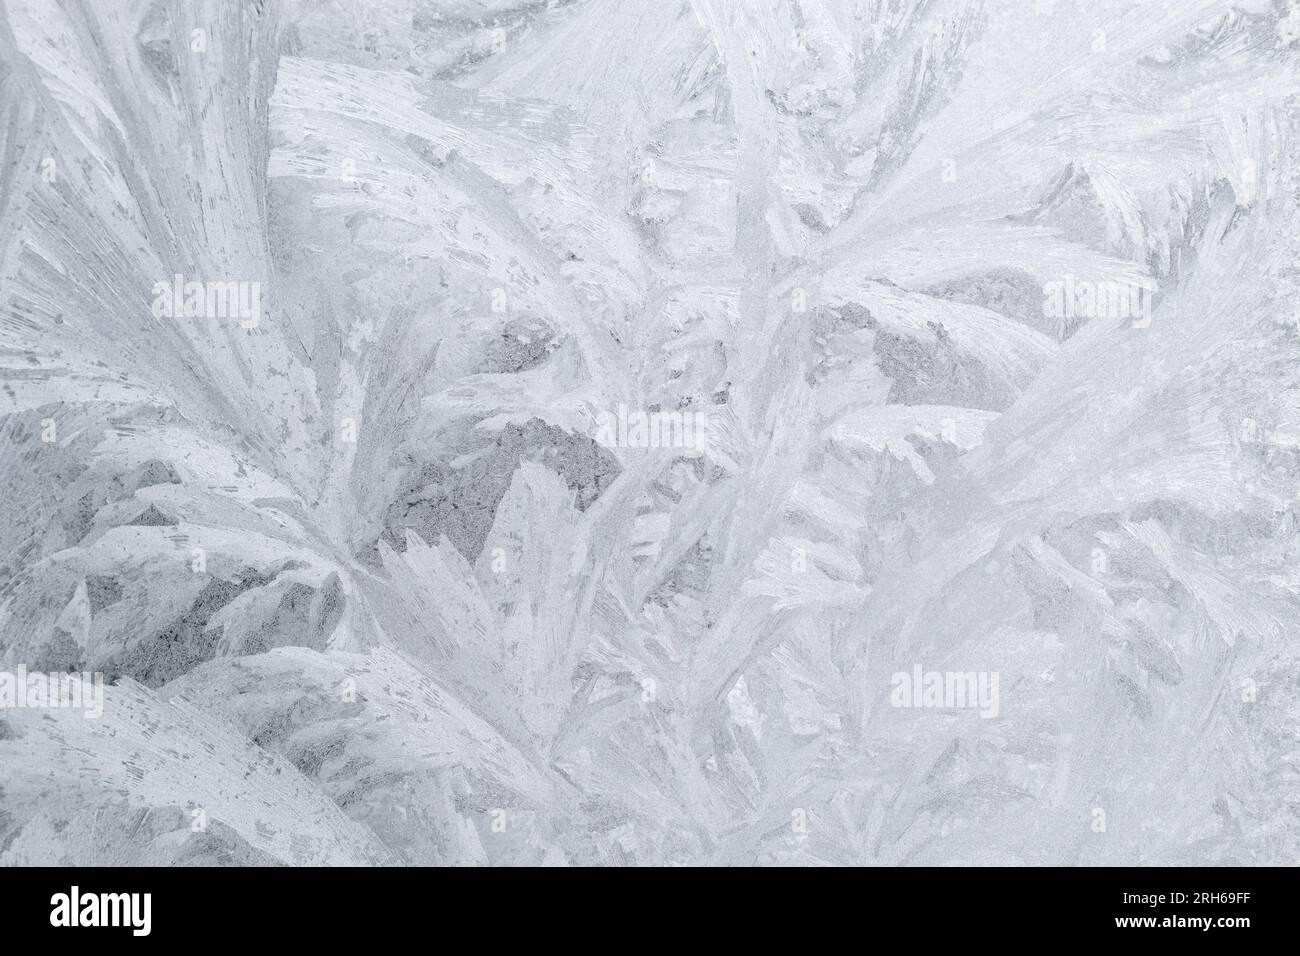 Patrones de hielo abstractos congelados en ventana de vidrio de un solo panel en invierno Foto de stock